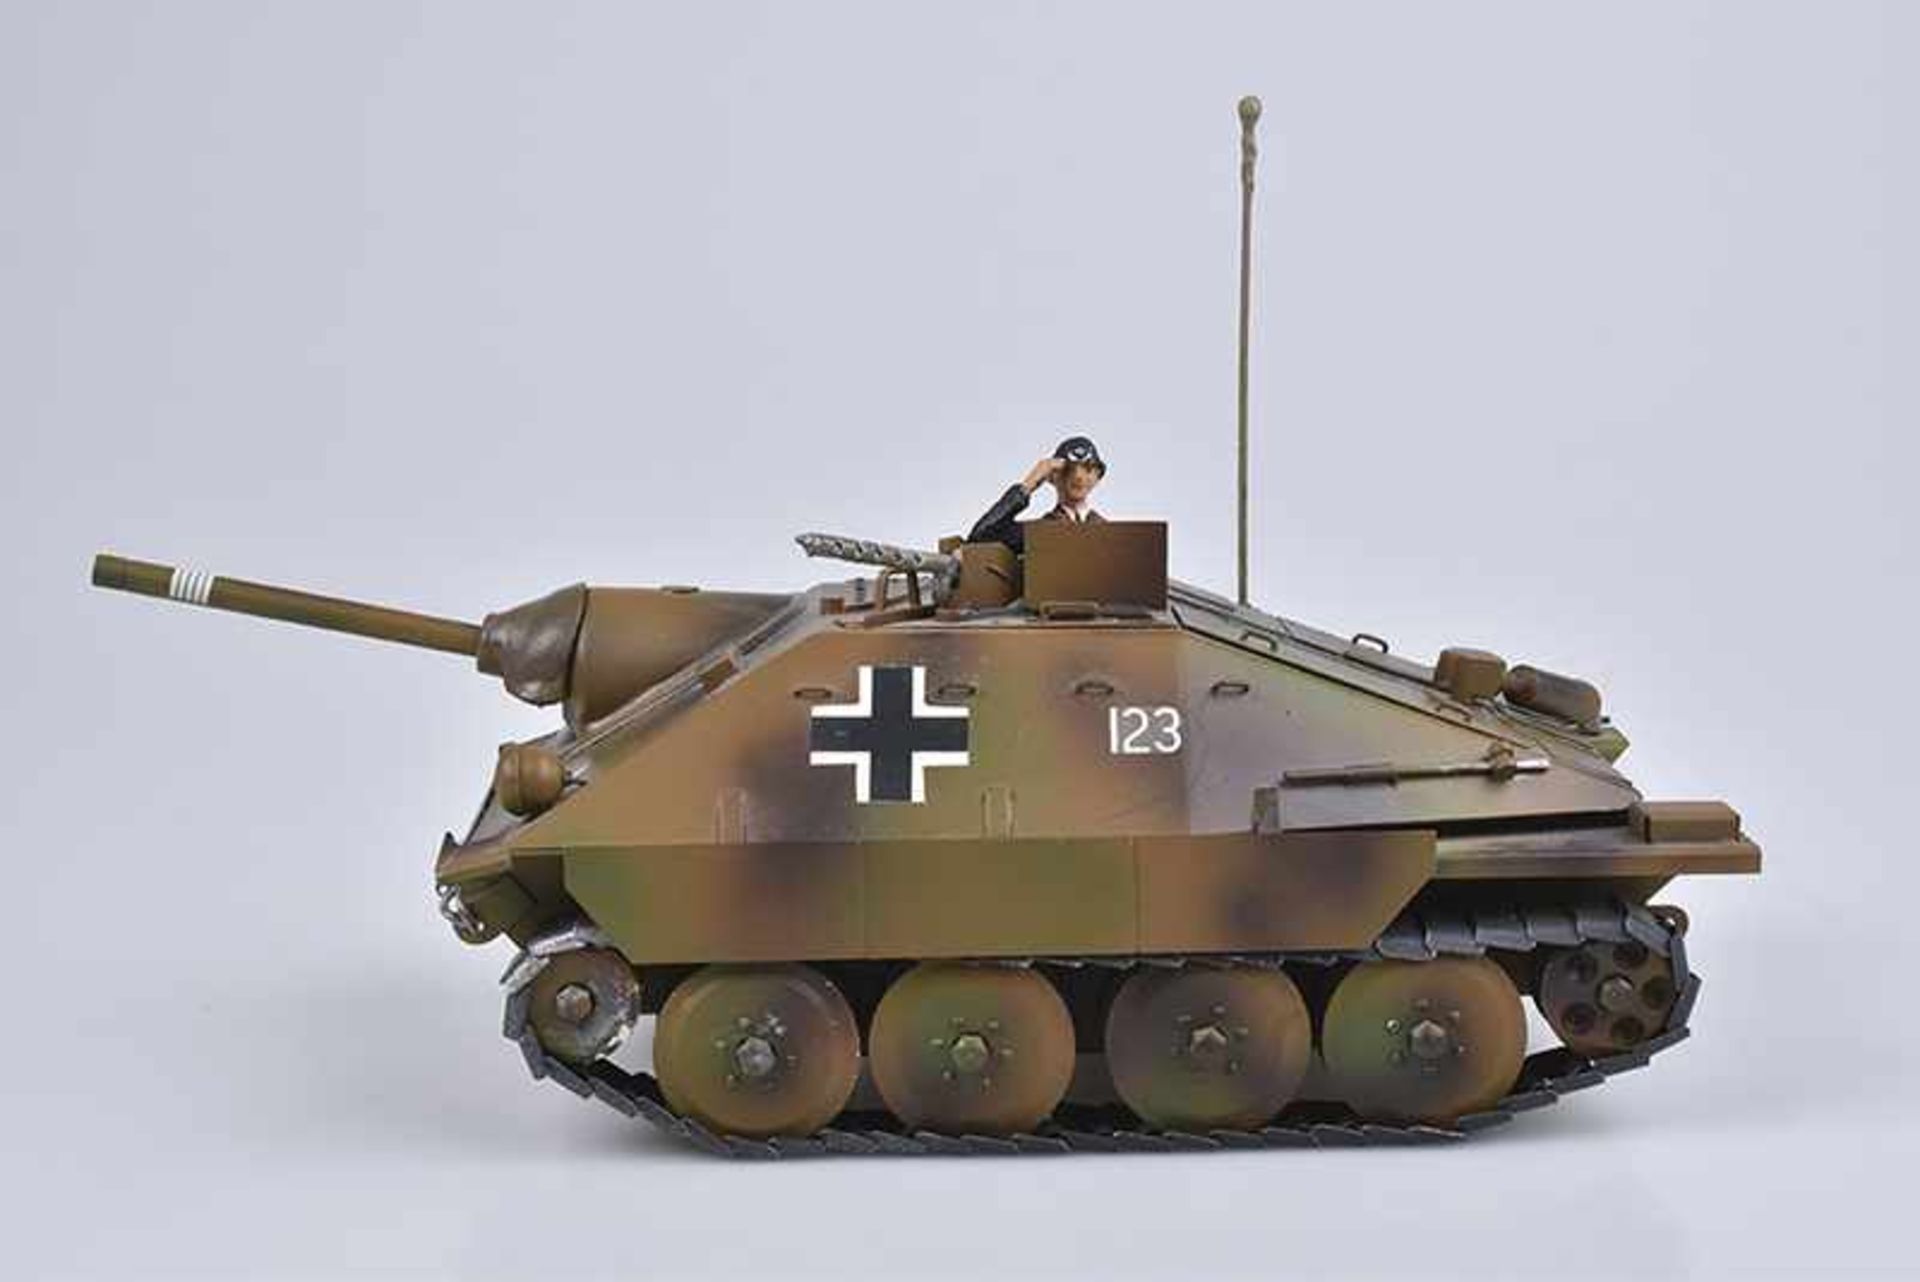 LINEOL DUSCHA Jagdpanzer, "Hetzer", Metall, 7 cm Serie, L 28 cm, Kanonenrohr, MG, 1